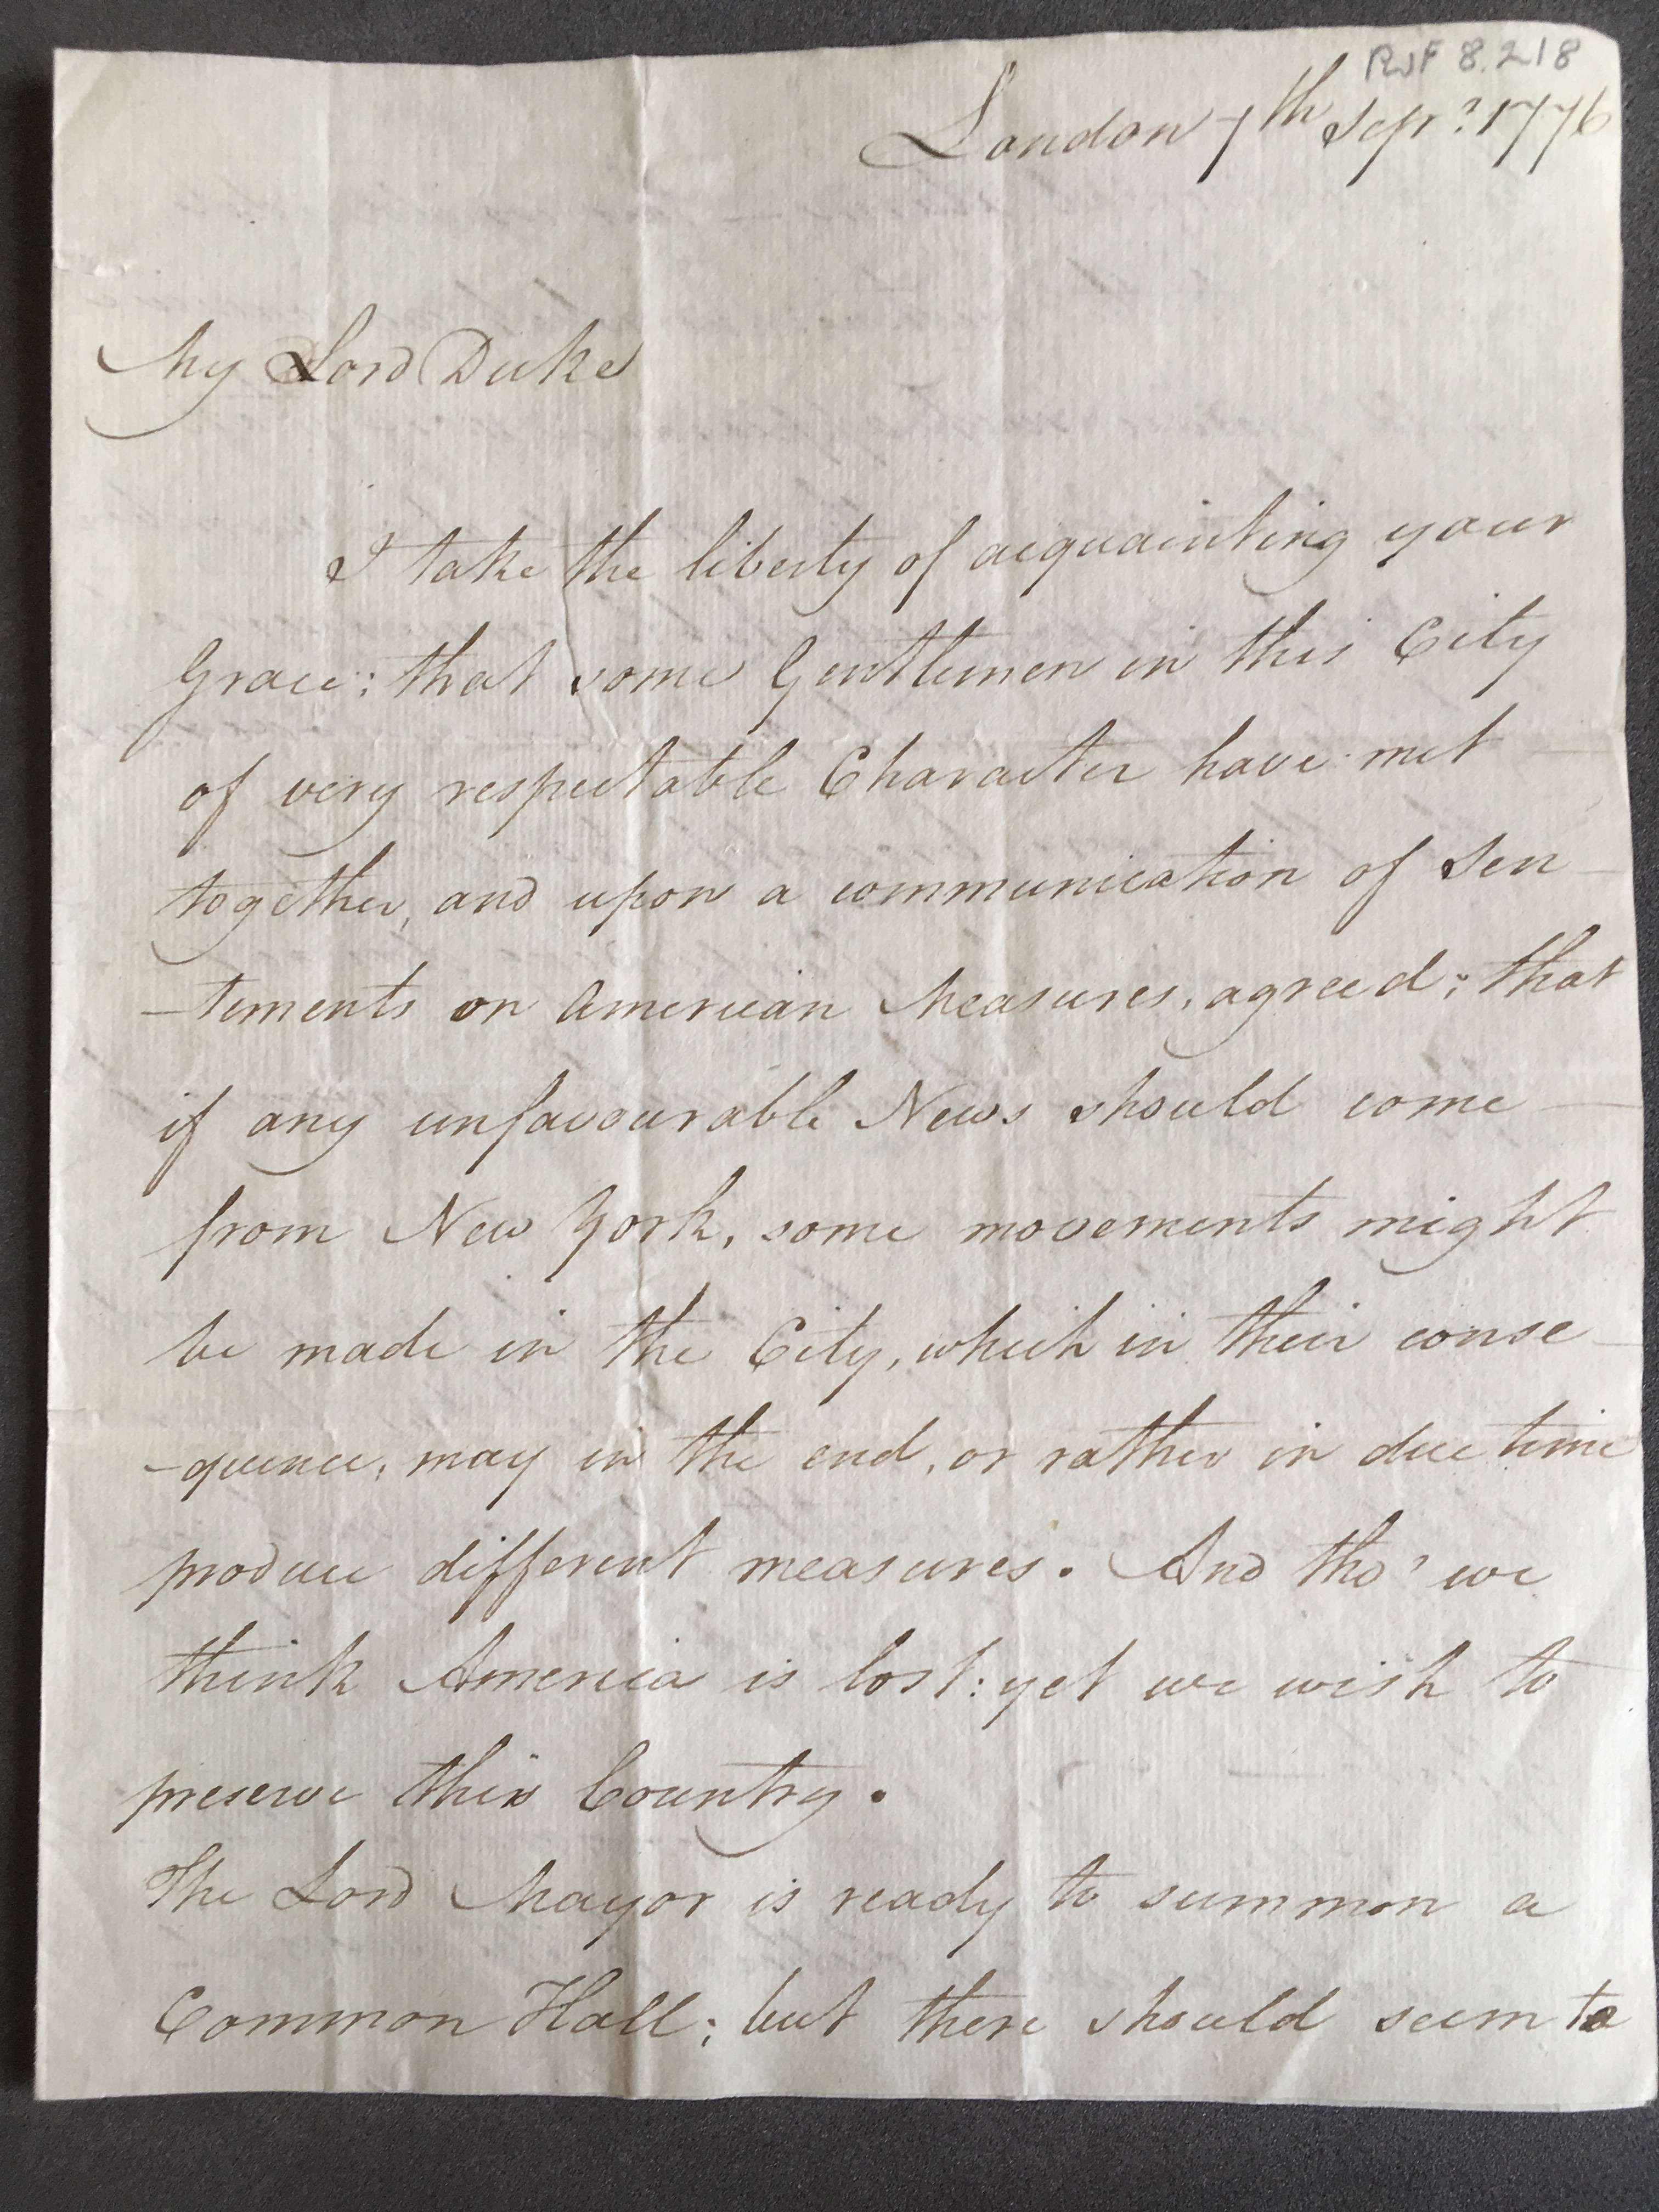 Letter from Stephen Sayre, Harley Street, London, to the 3rd Duke of Portland; 7 Sep. 1776. (Nottingham University Archives)